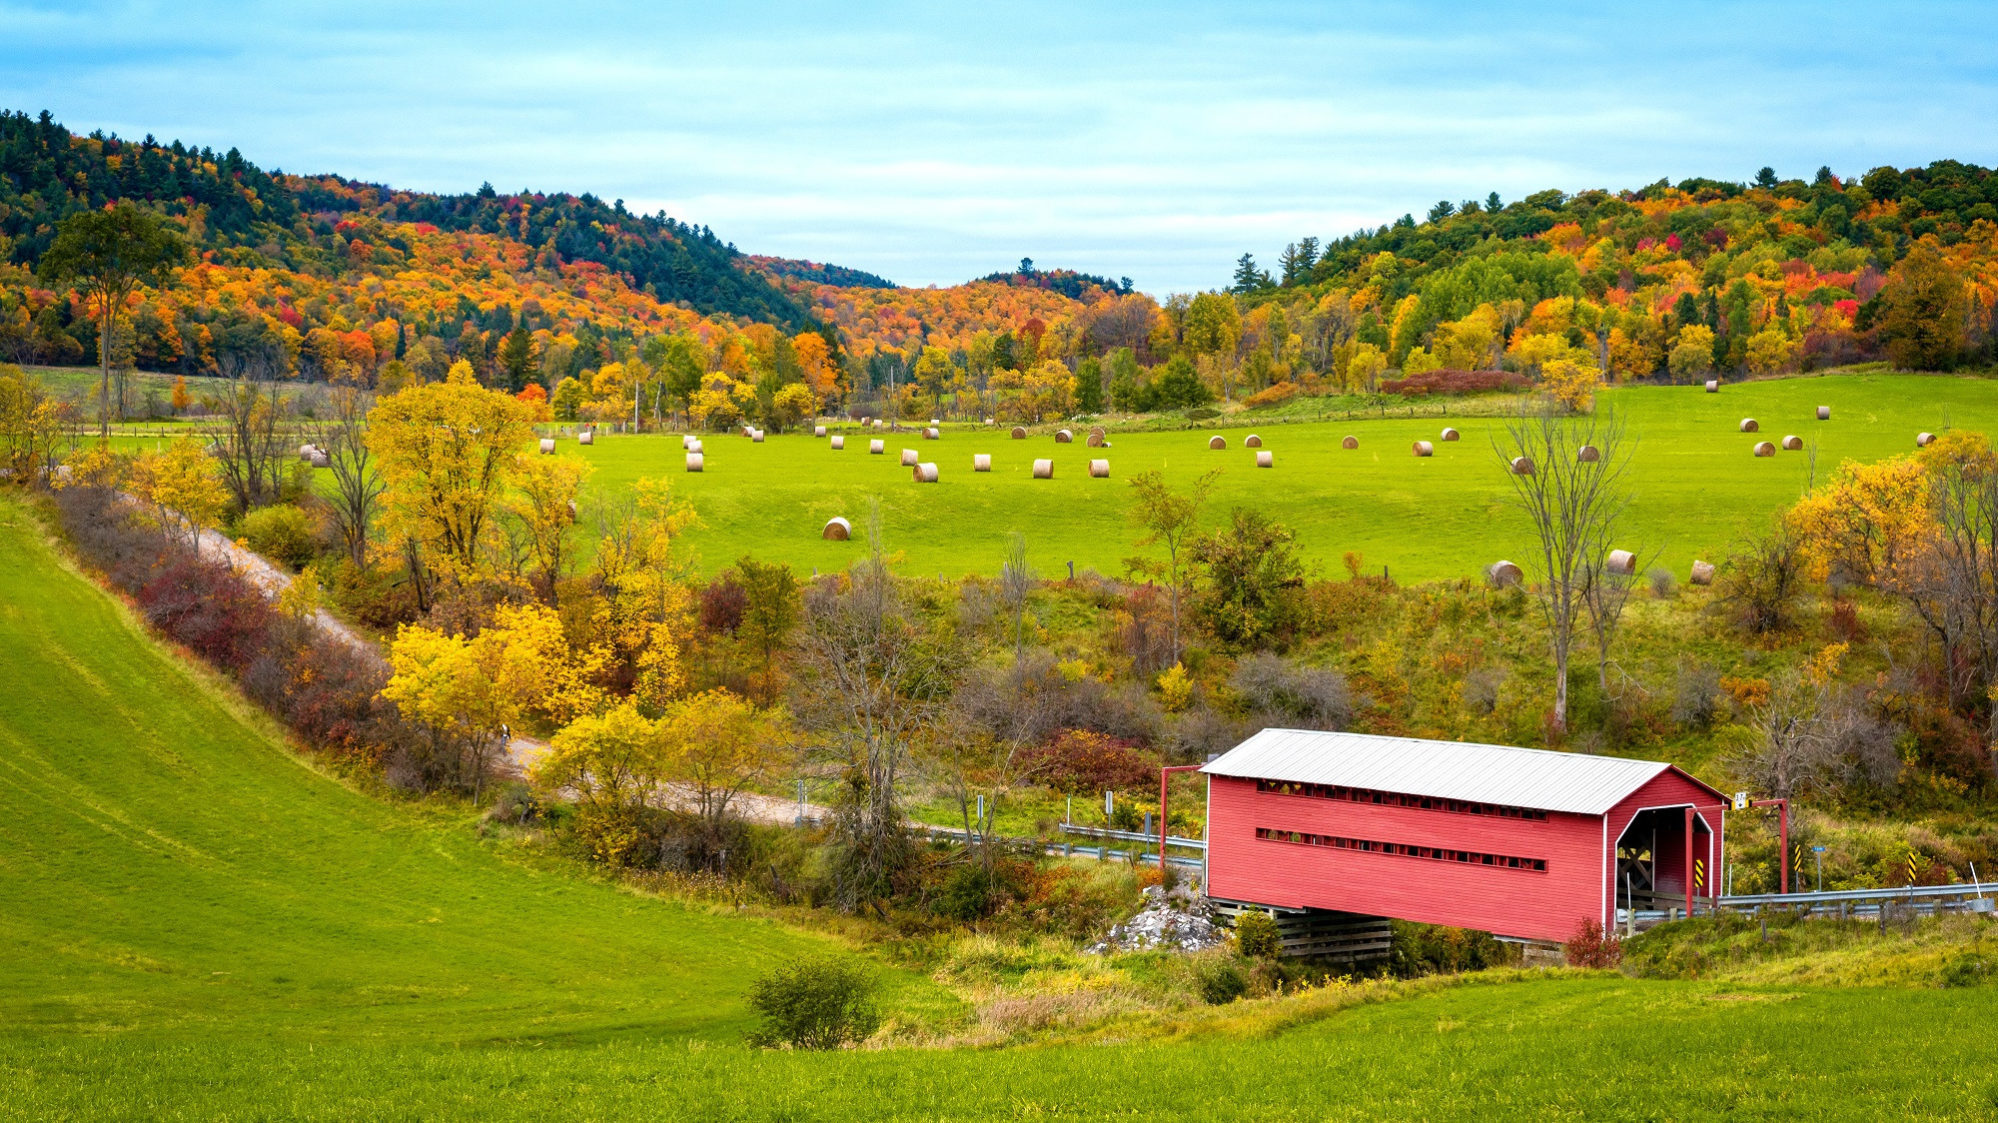 La vallée du ruisseau Meech en automne. On y voit un pont couvert, des meules de foin et des arbres au feuillage ocre et orangé en arrière-plan.